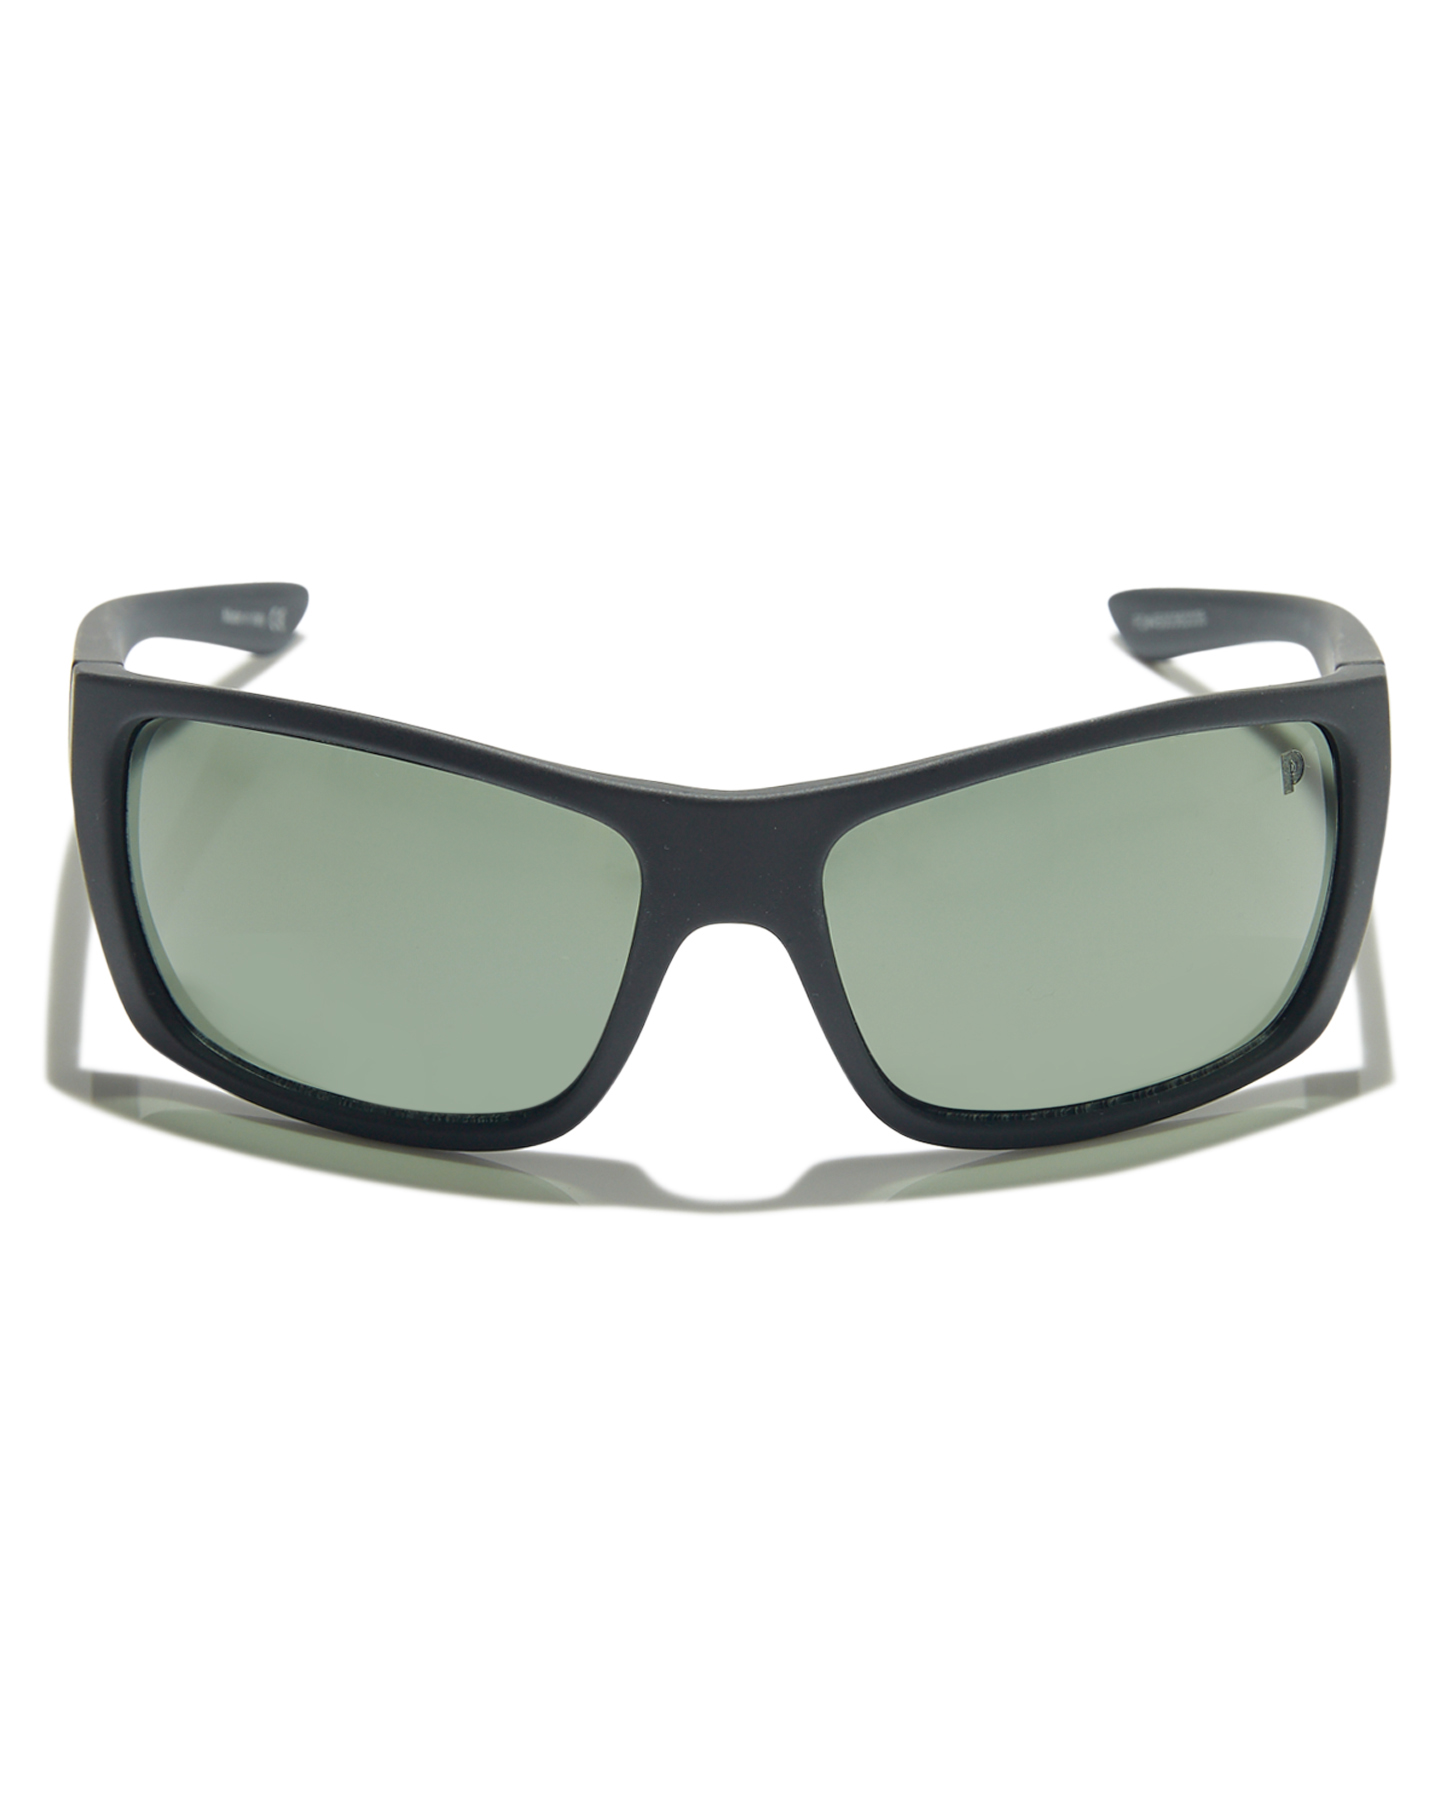 Quiksilver Mens Hideout Polarised Floatable Sunglasses - Black Green  Polarisd